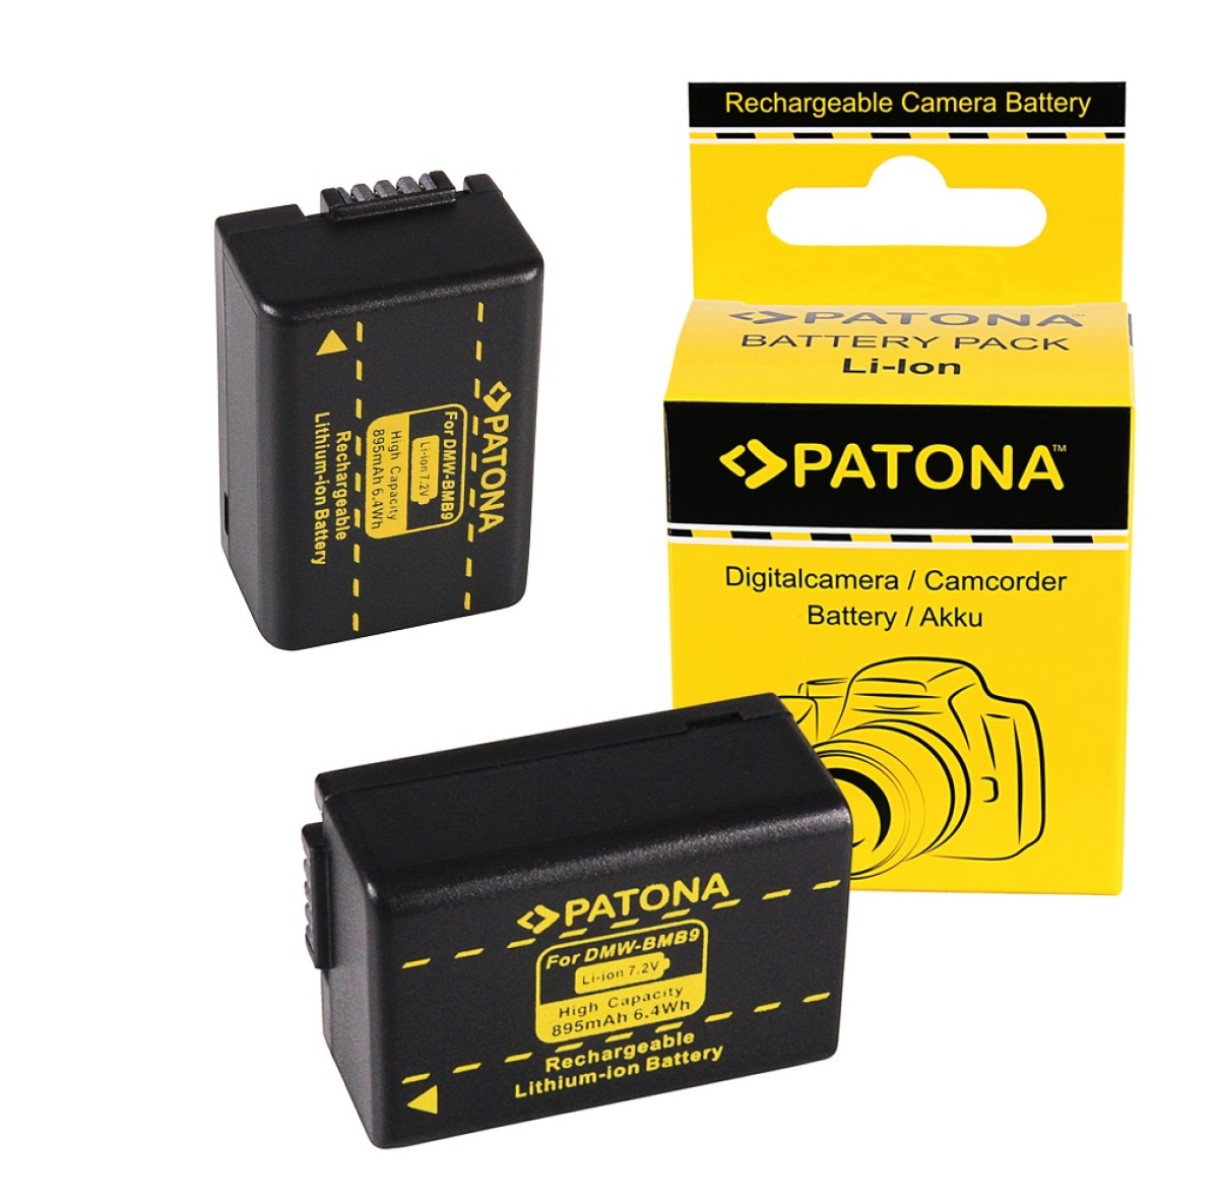 PATONA 2x Akku kompatibel für Panasonic Ersatzakku, Stück 895mAh Li-Ion DMC-FZ40 2